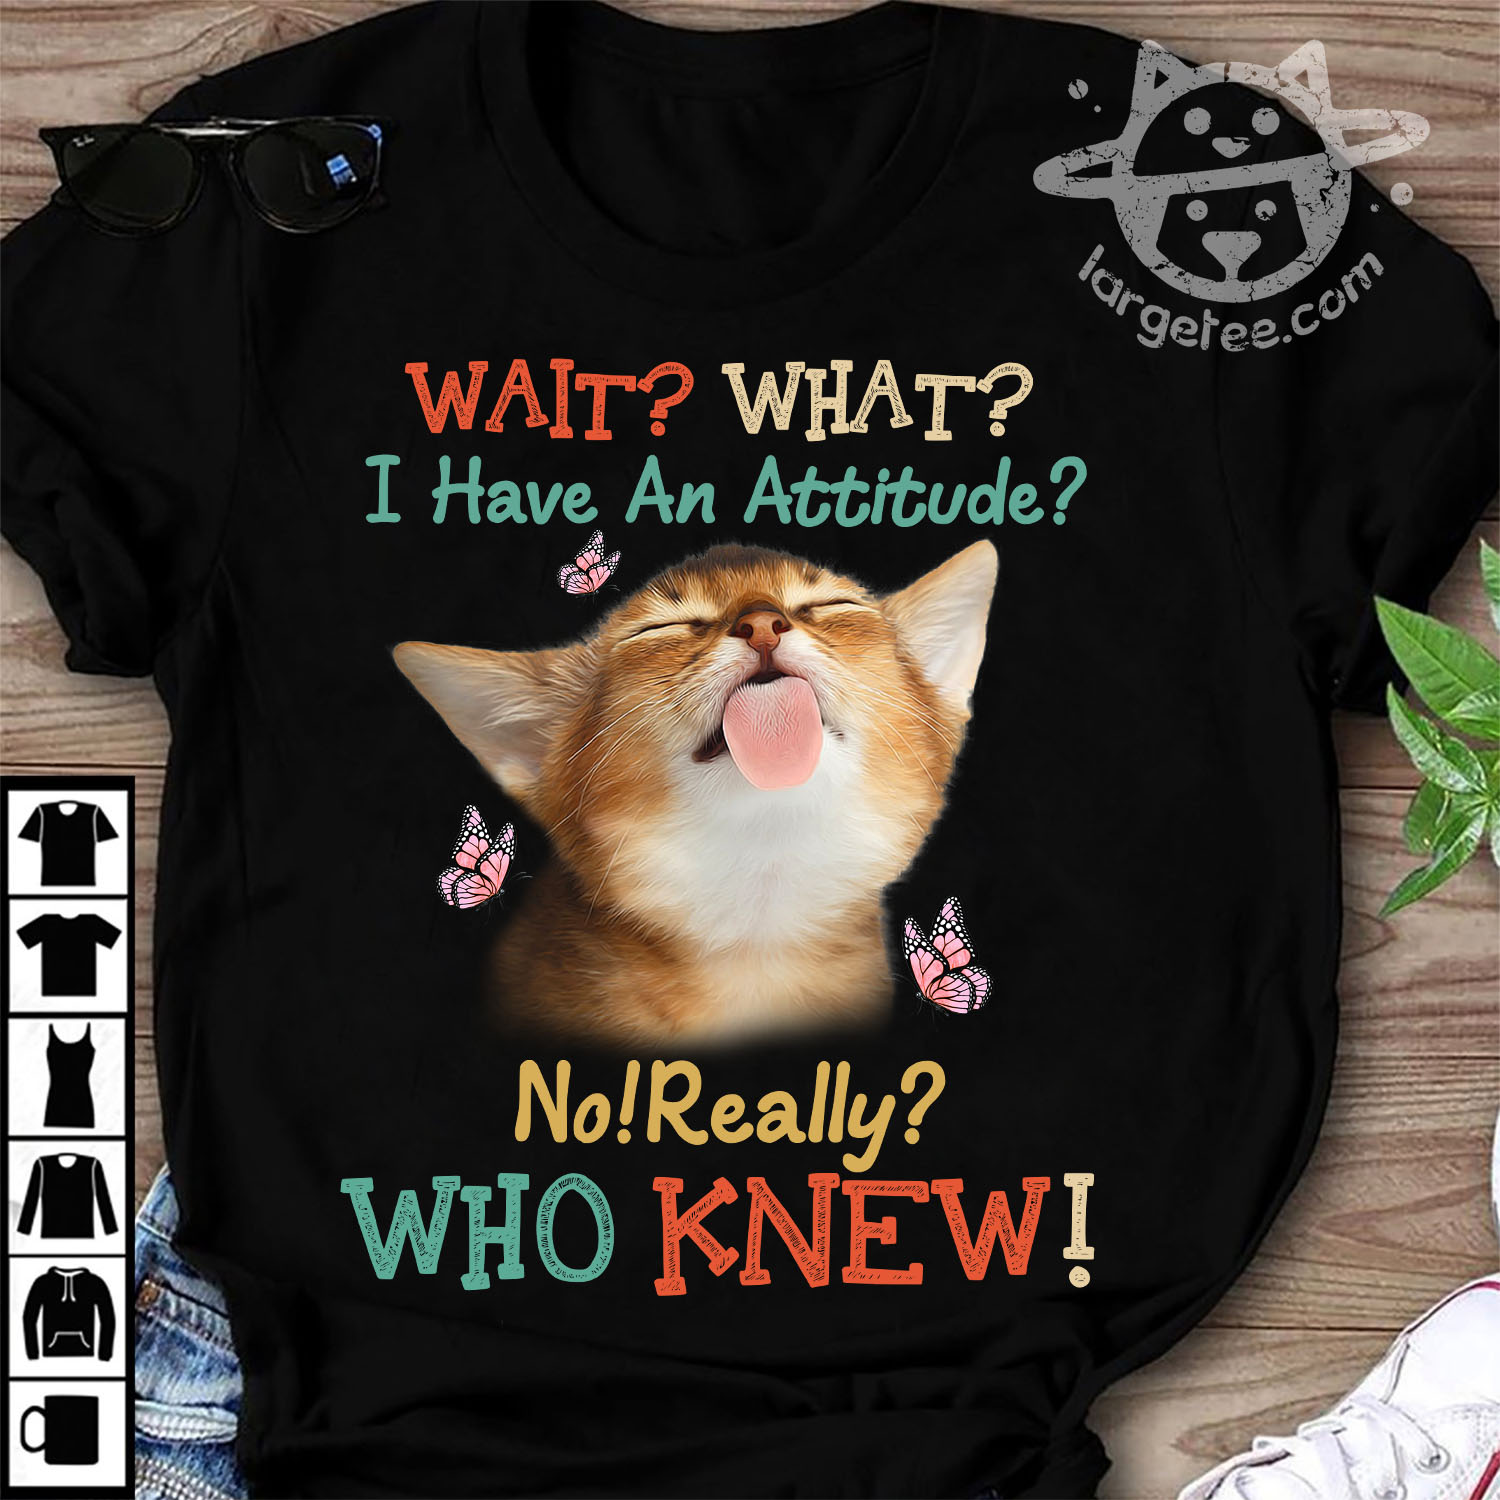 I have an attitude - Cat attitude, cute kitty cat